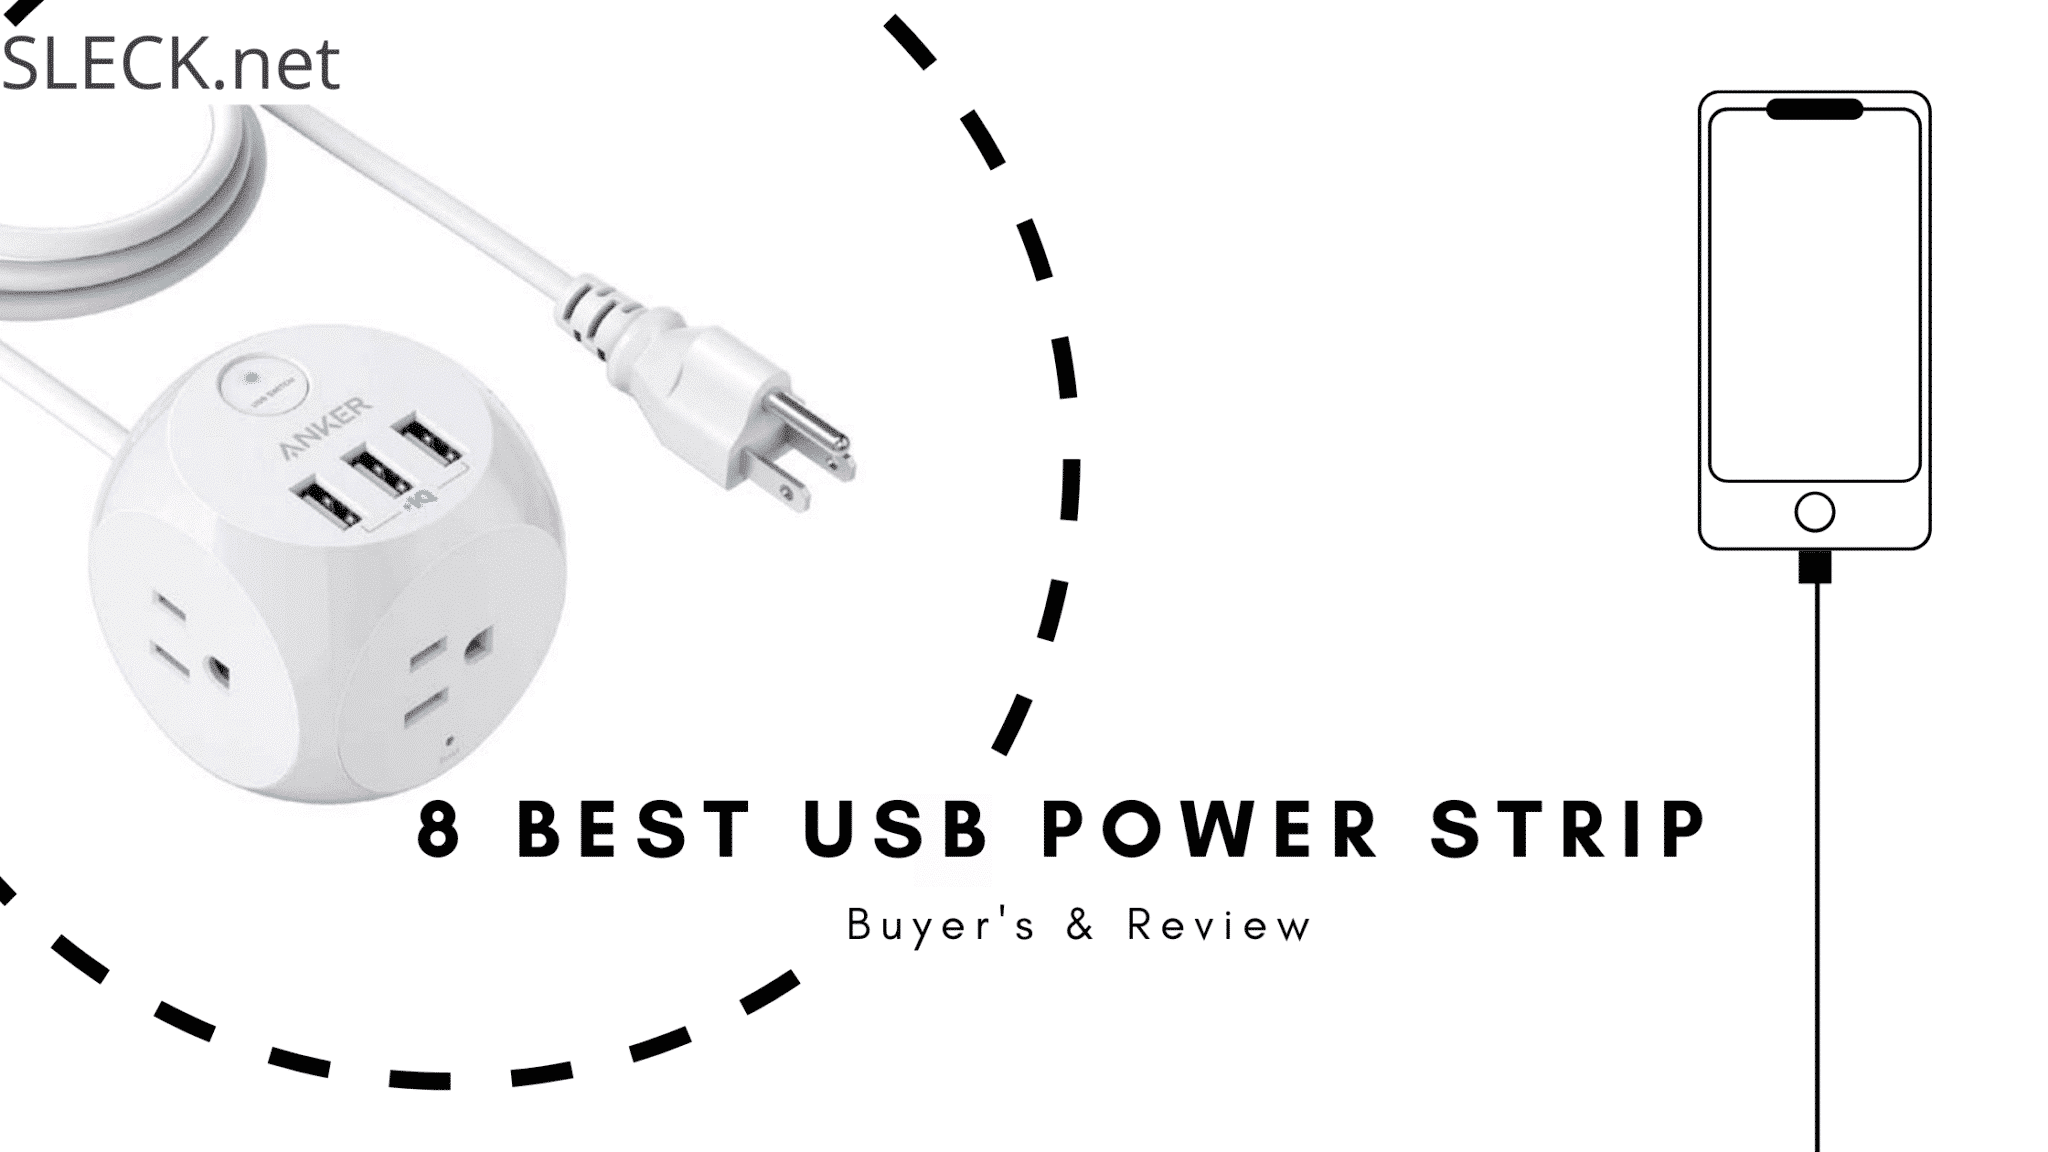 USB power strip